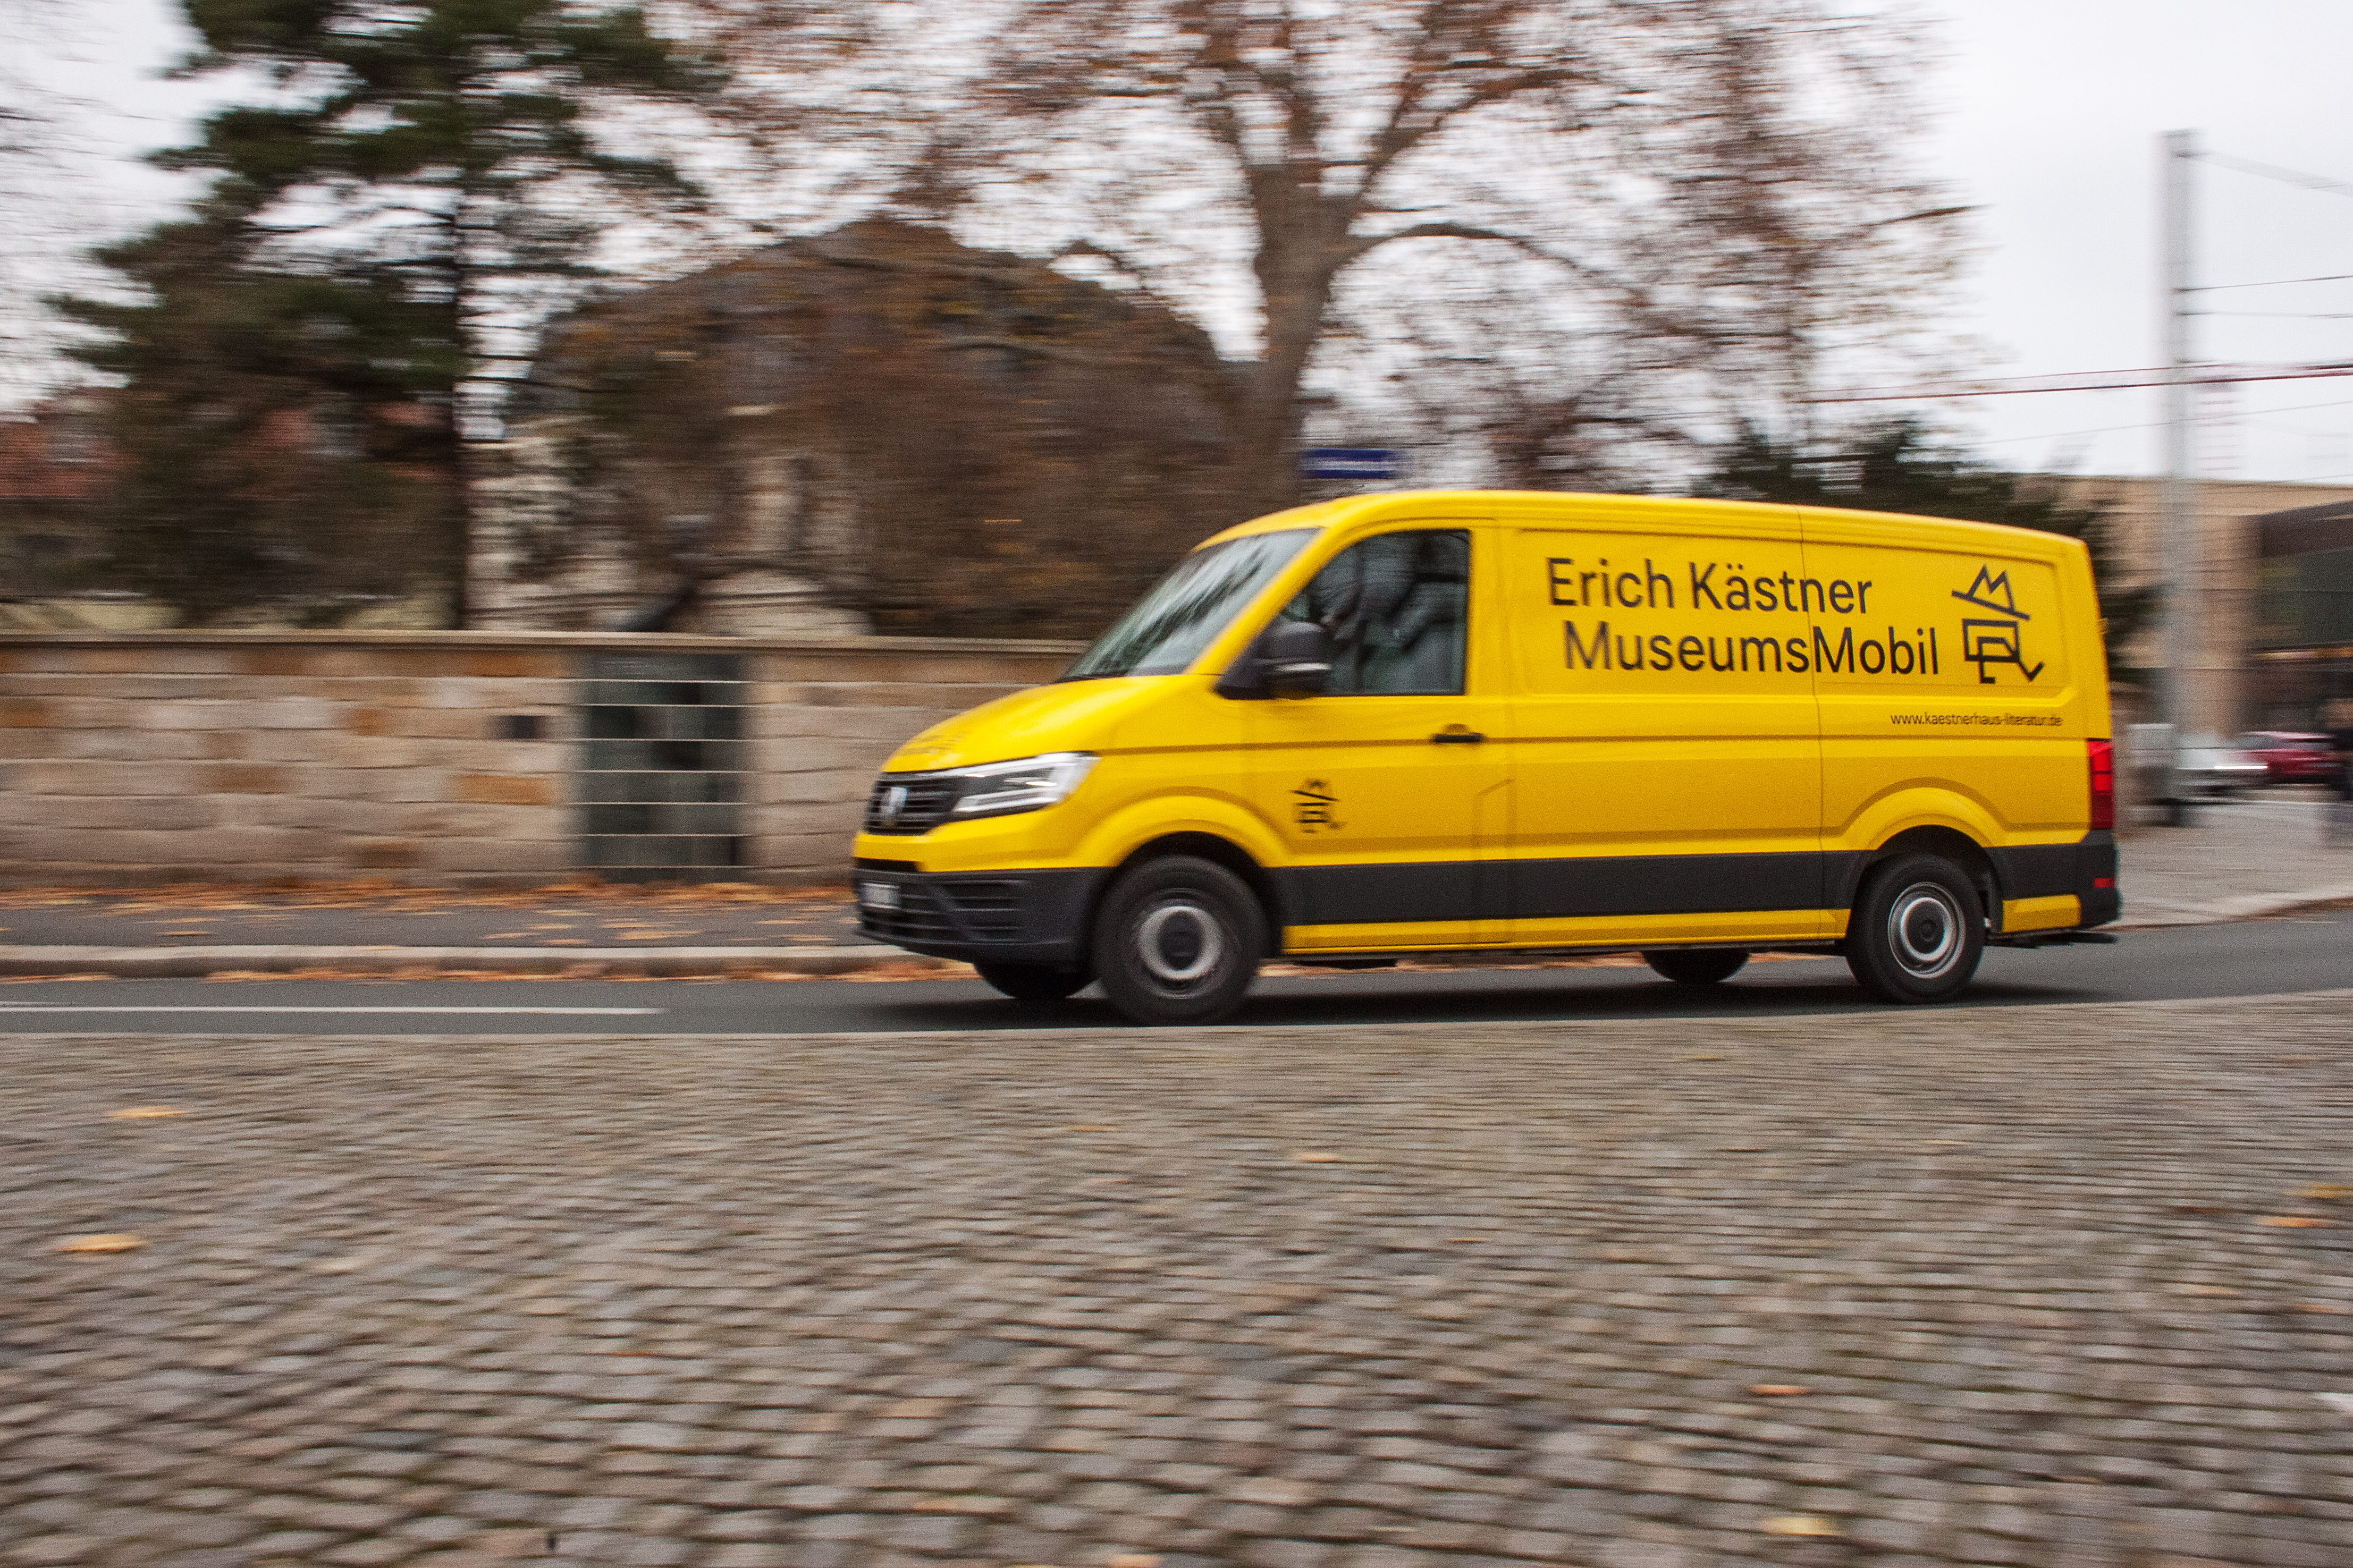 Ein gelber Klein-Bus mit der Aufschrift Erich Kästner MuseumsMobil fährt auf der Straße vorbei.